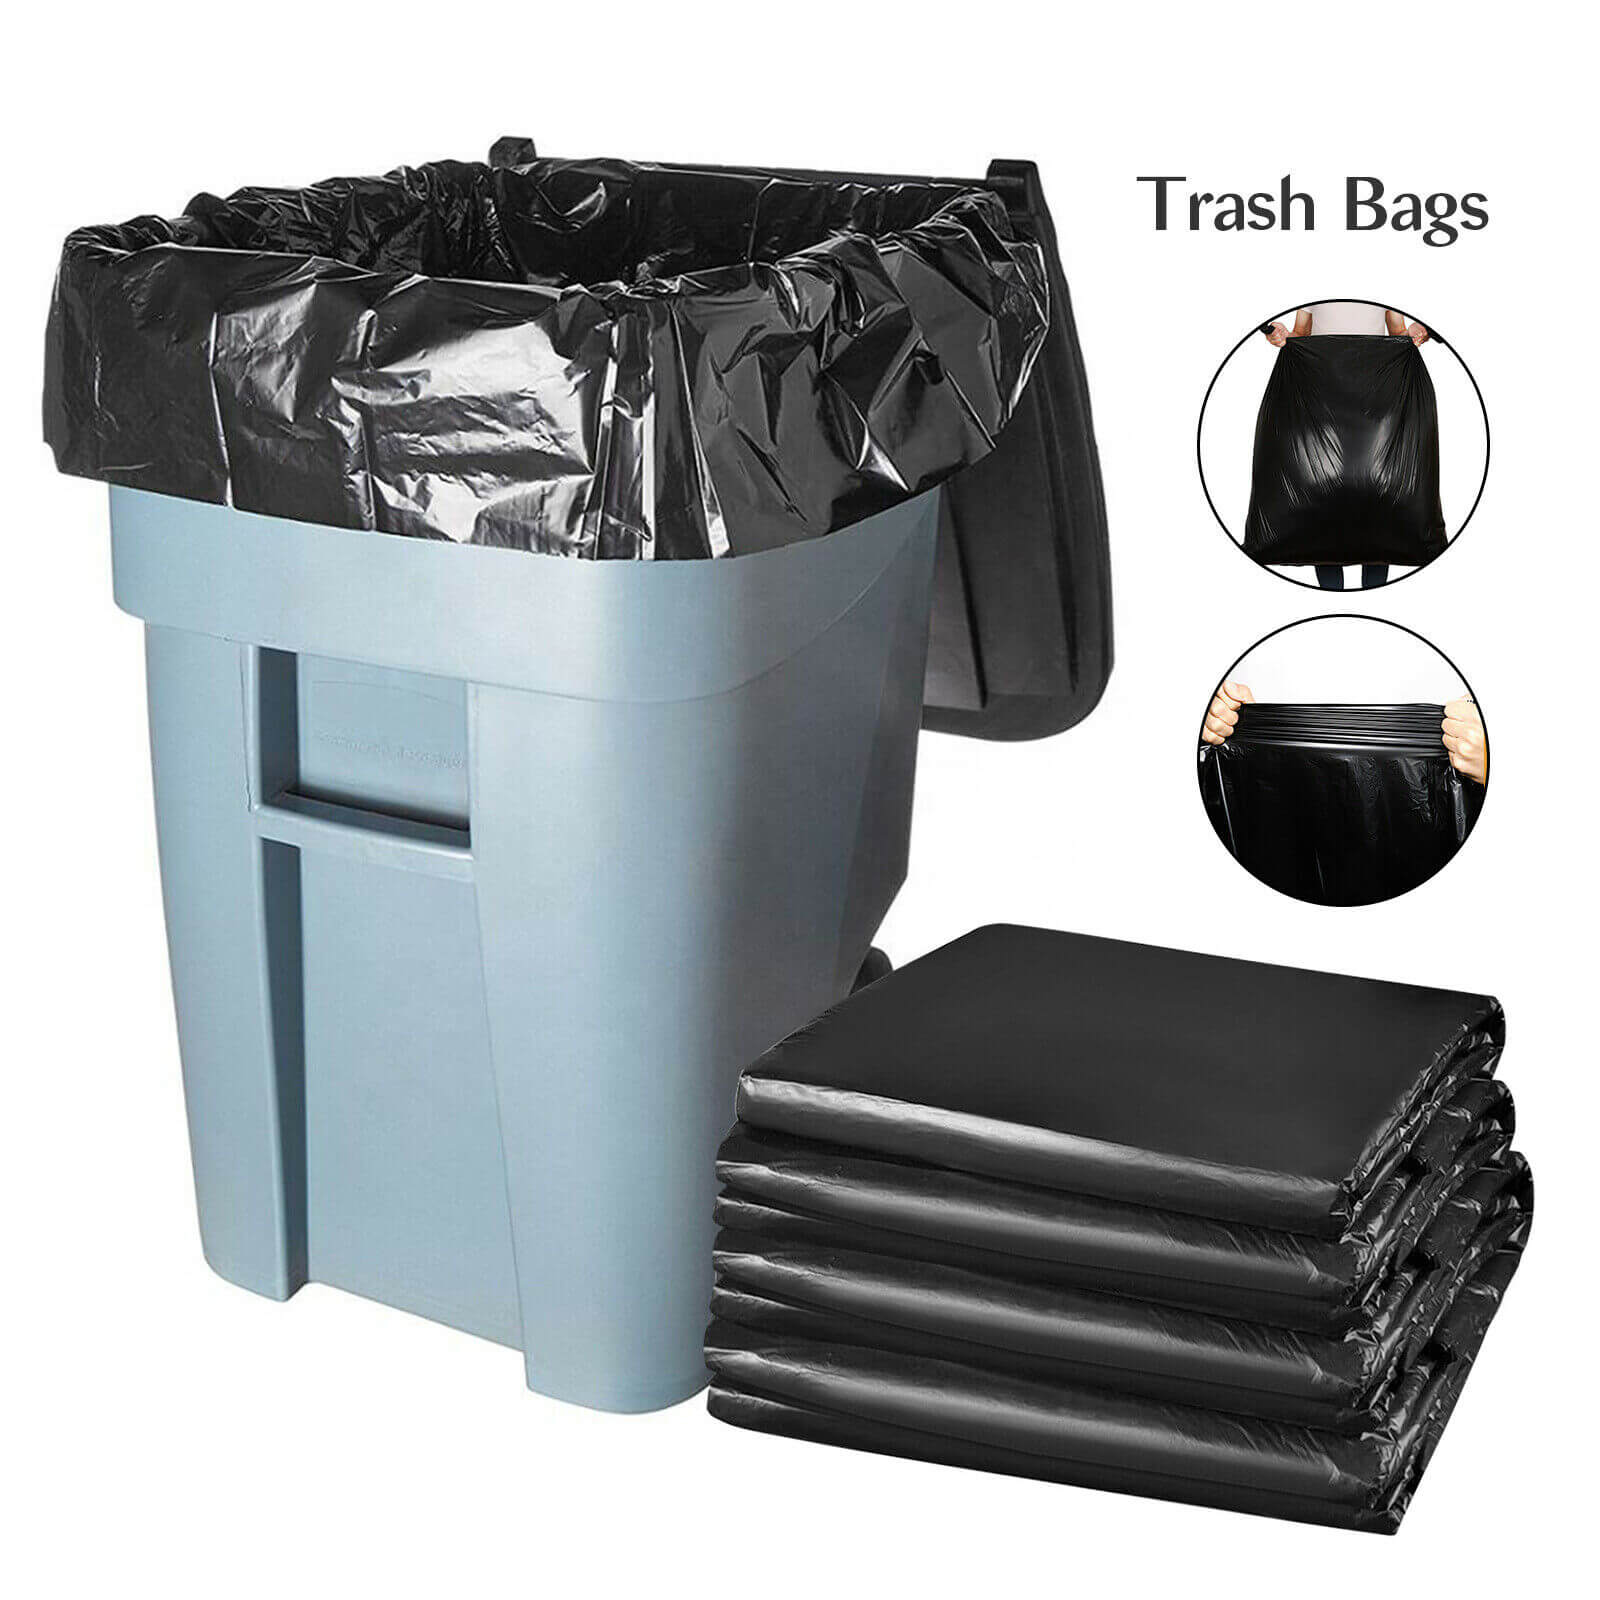 https://bcbmall.com/cdn/shop/products/50Pcs-Heavy-Duty-Large-Black-Trash-Bags-60-Gallon_6.jpg?v=1650532910